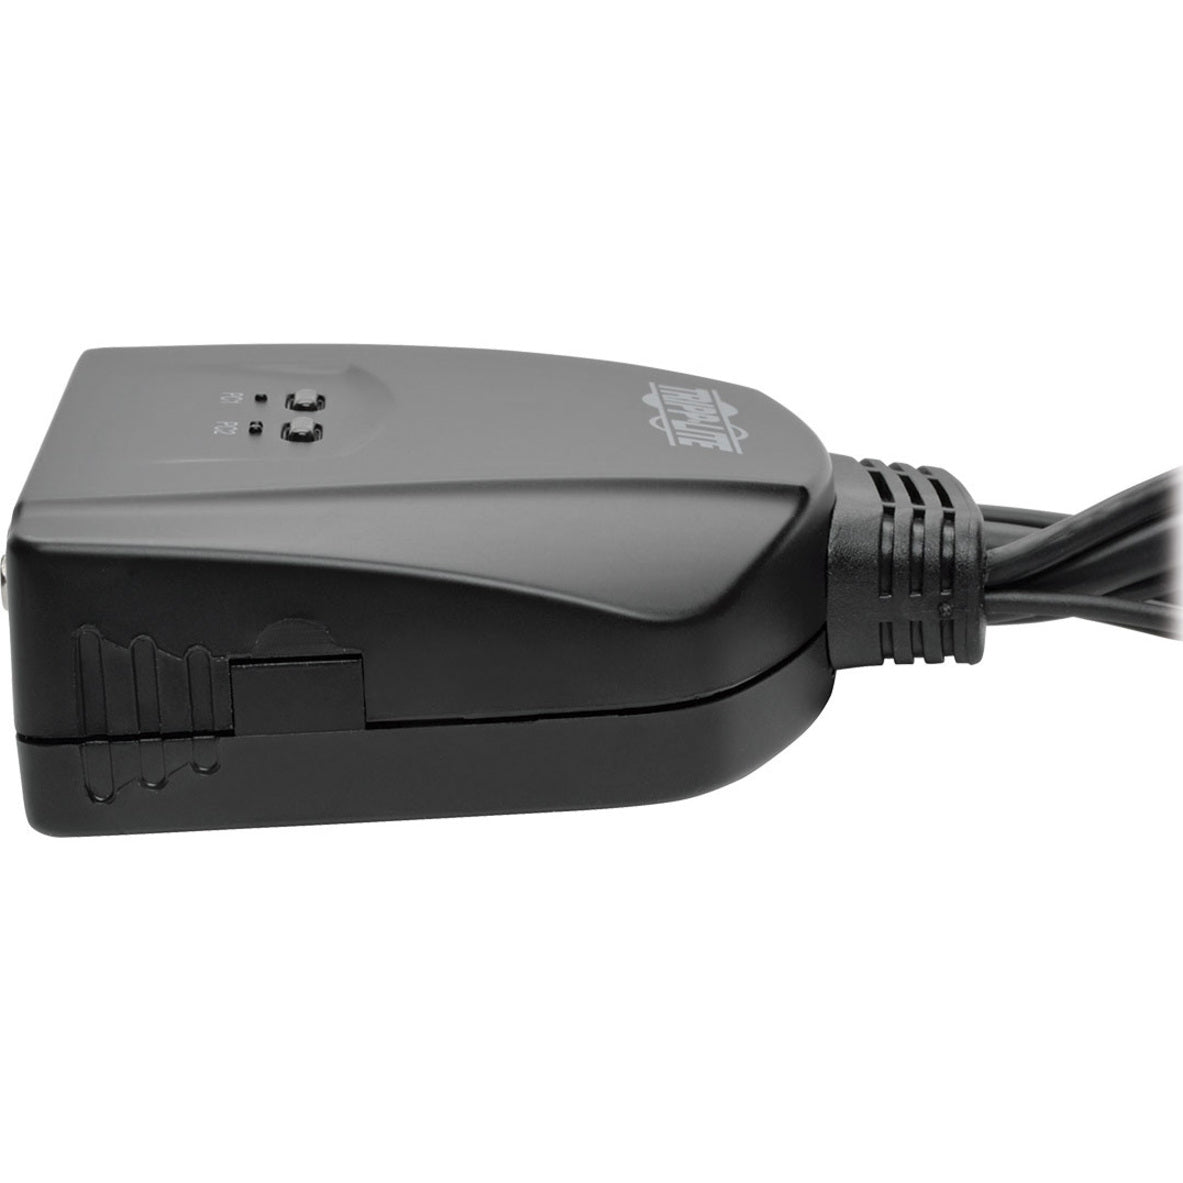 Tripp Lite B032-VU2 2-Port USB/VGA Câble KVM Switch avec Câbles et Partage de Périphériques USB Résolution 2048 x 1536 Garantie de 3 ans